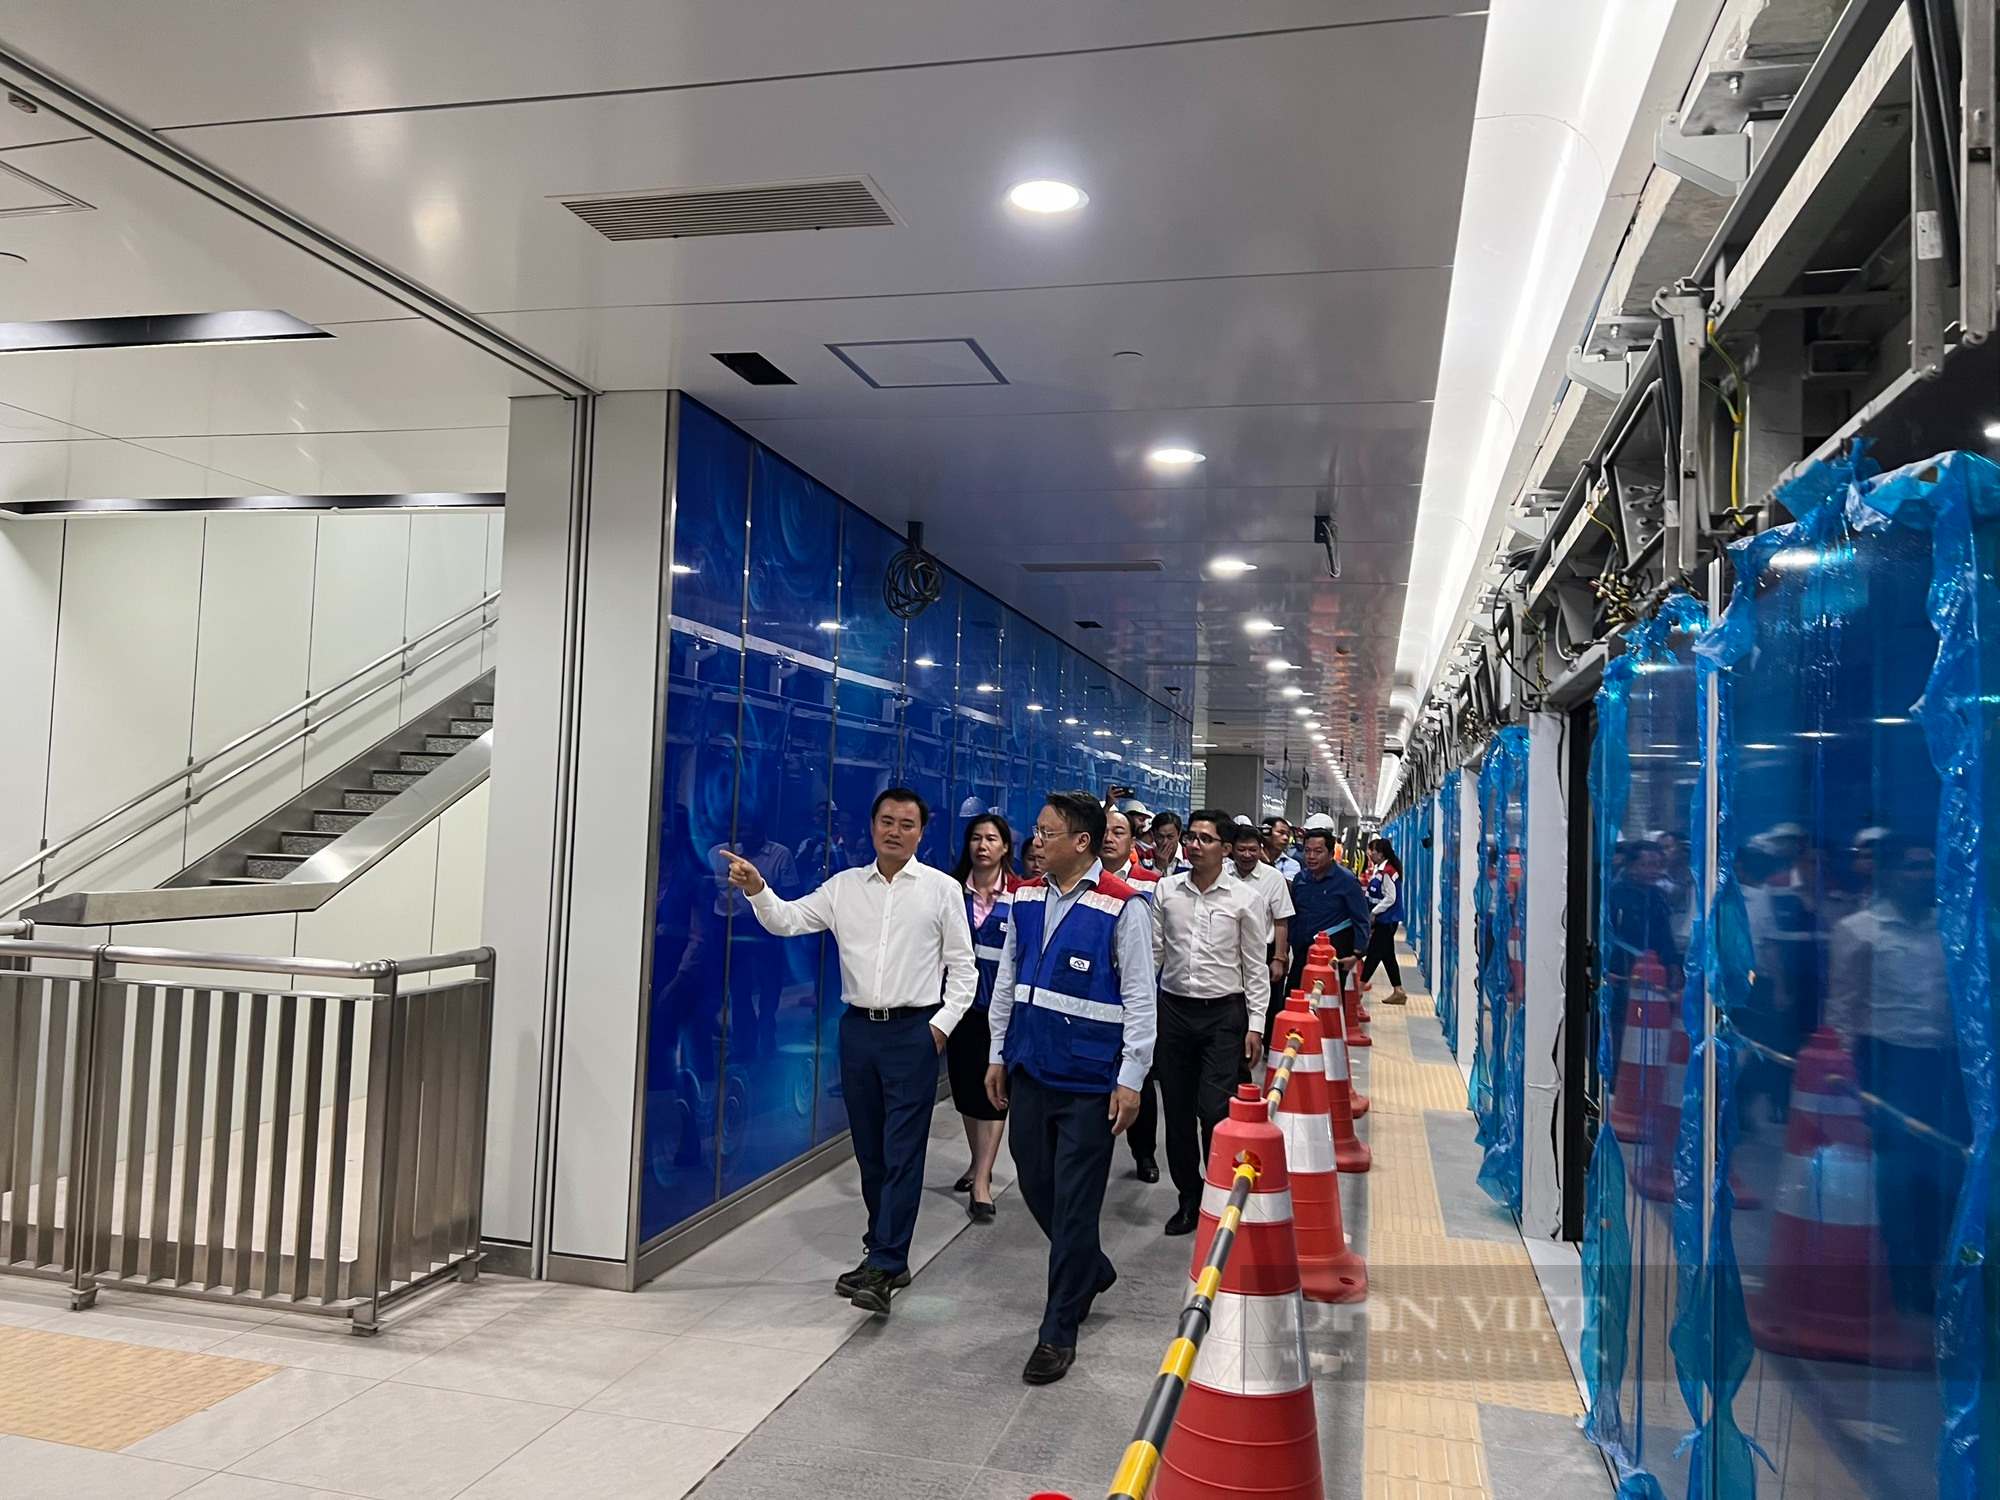 Chiêm ngưỡng đoàn tàu Metro Bến Thành - Suối Tiên chạy thử nghiệm toàn tuyến - Ảnh 2.